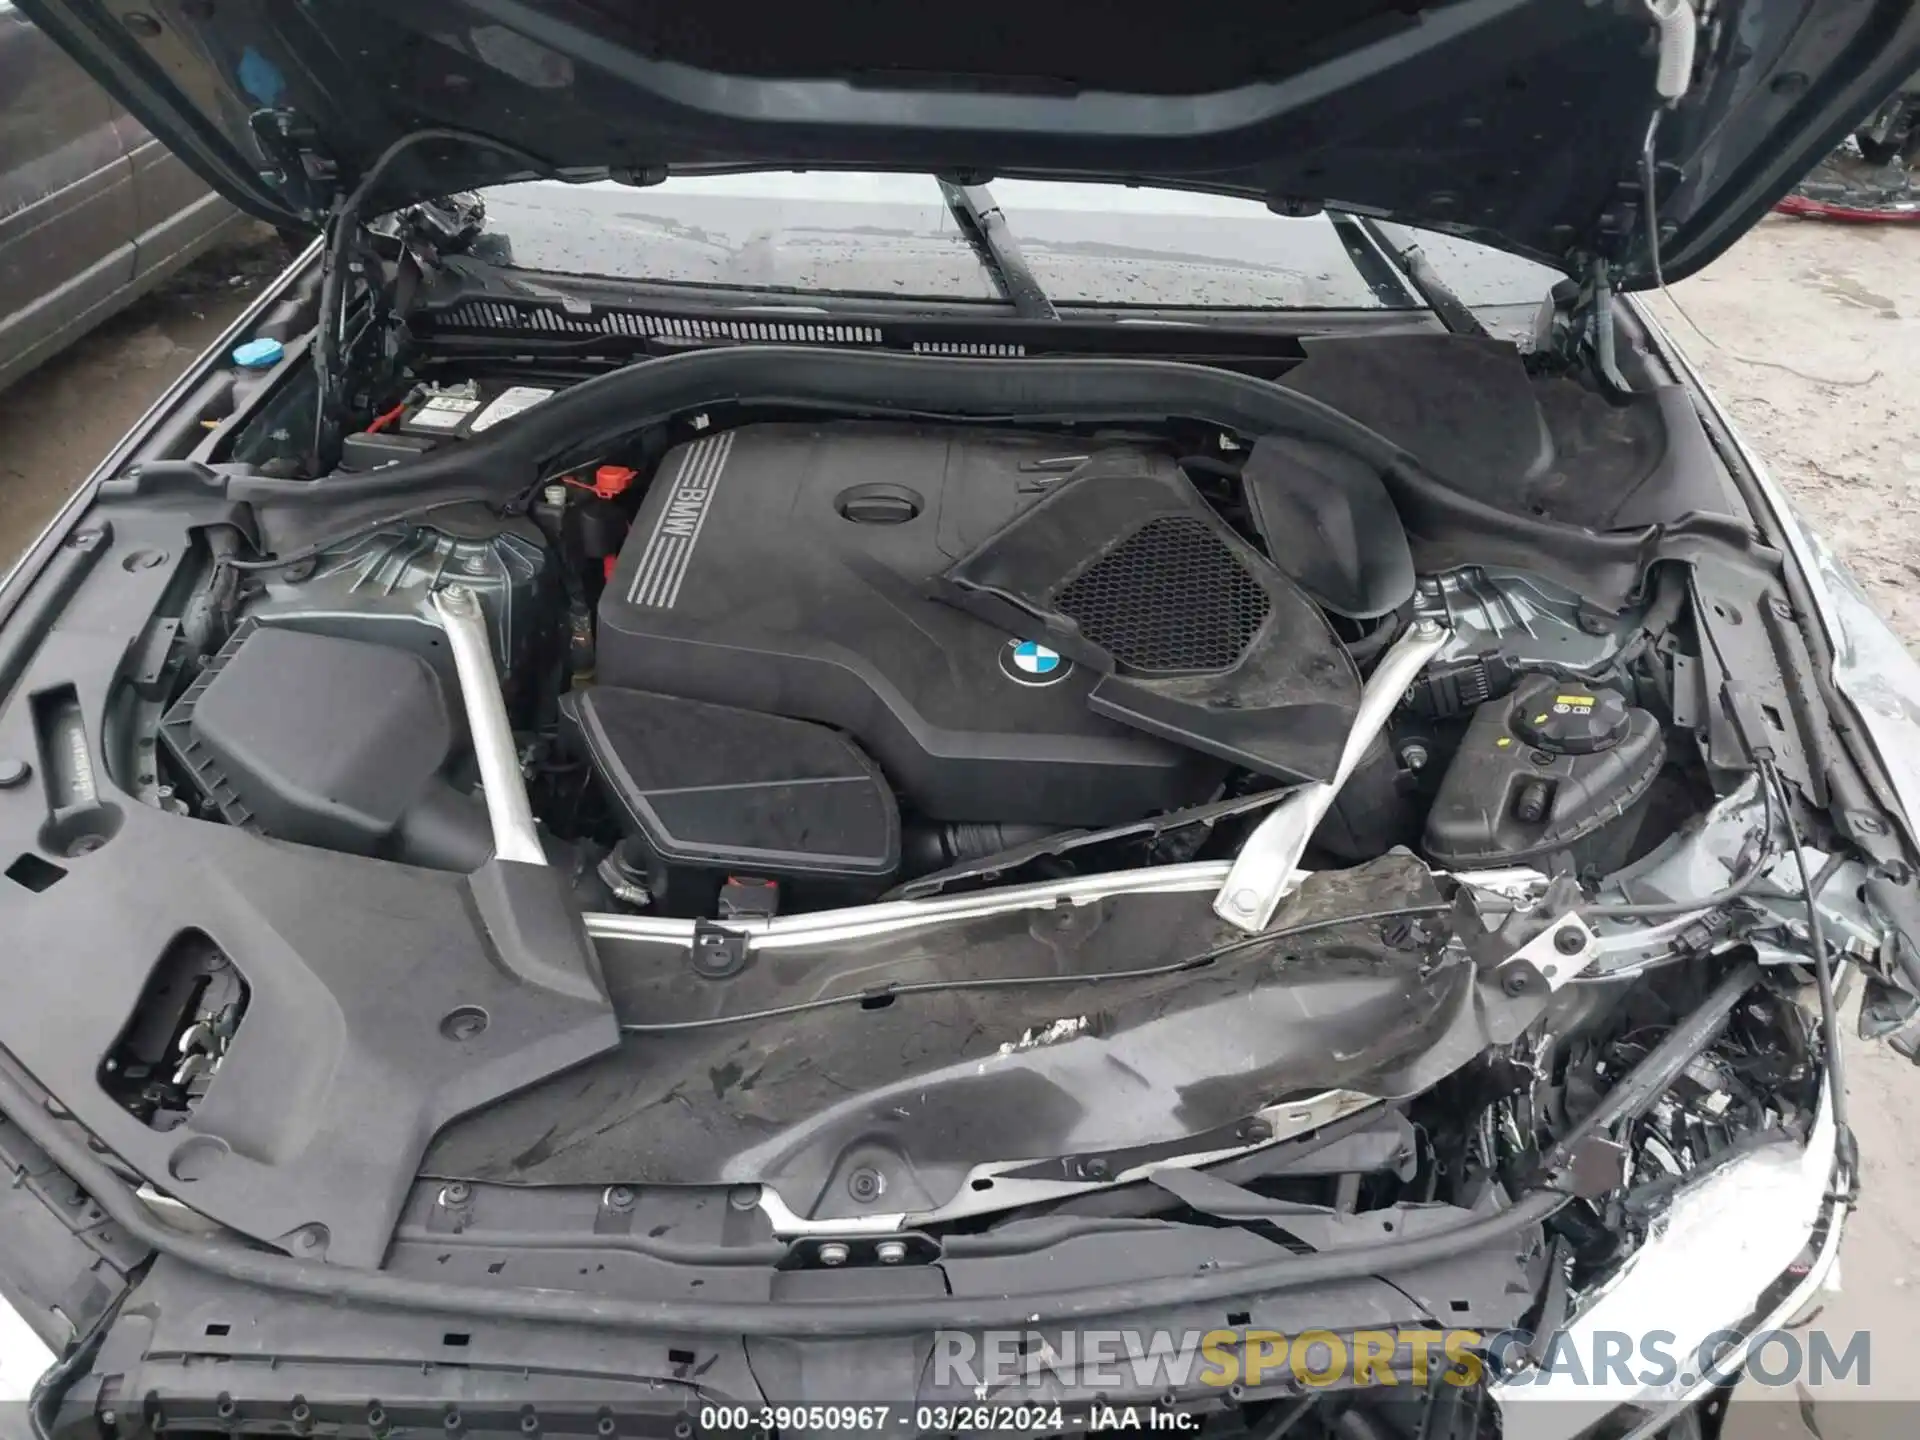 10 Photograph of a damaged car WBAJR7C09LWW77741 BMW 530I 2020